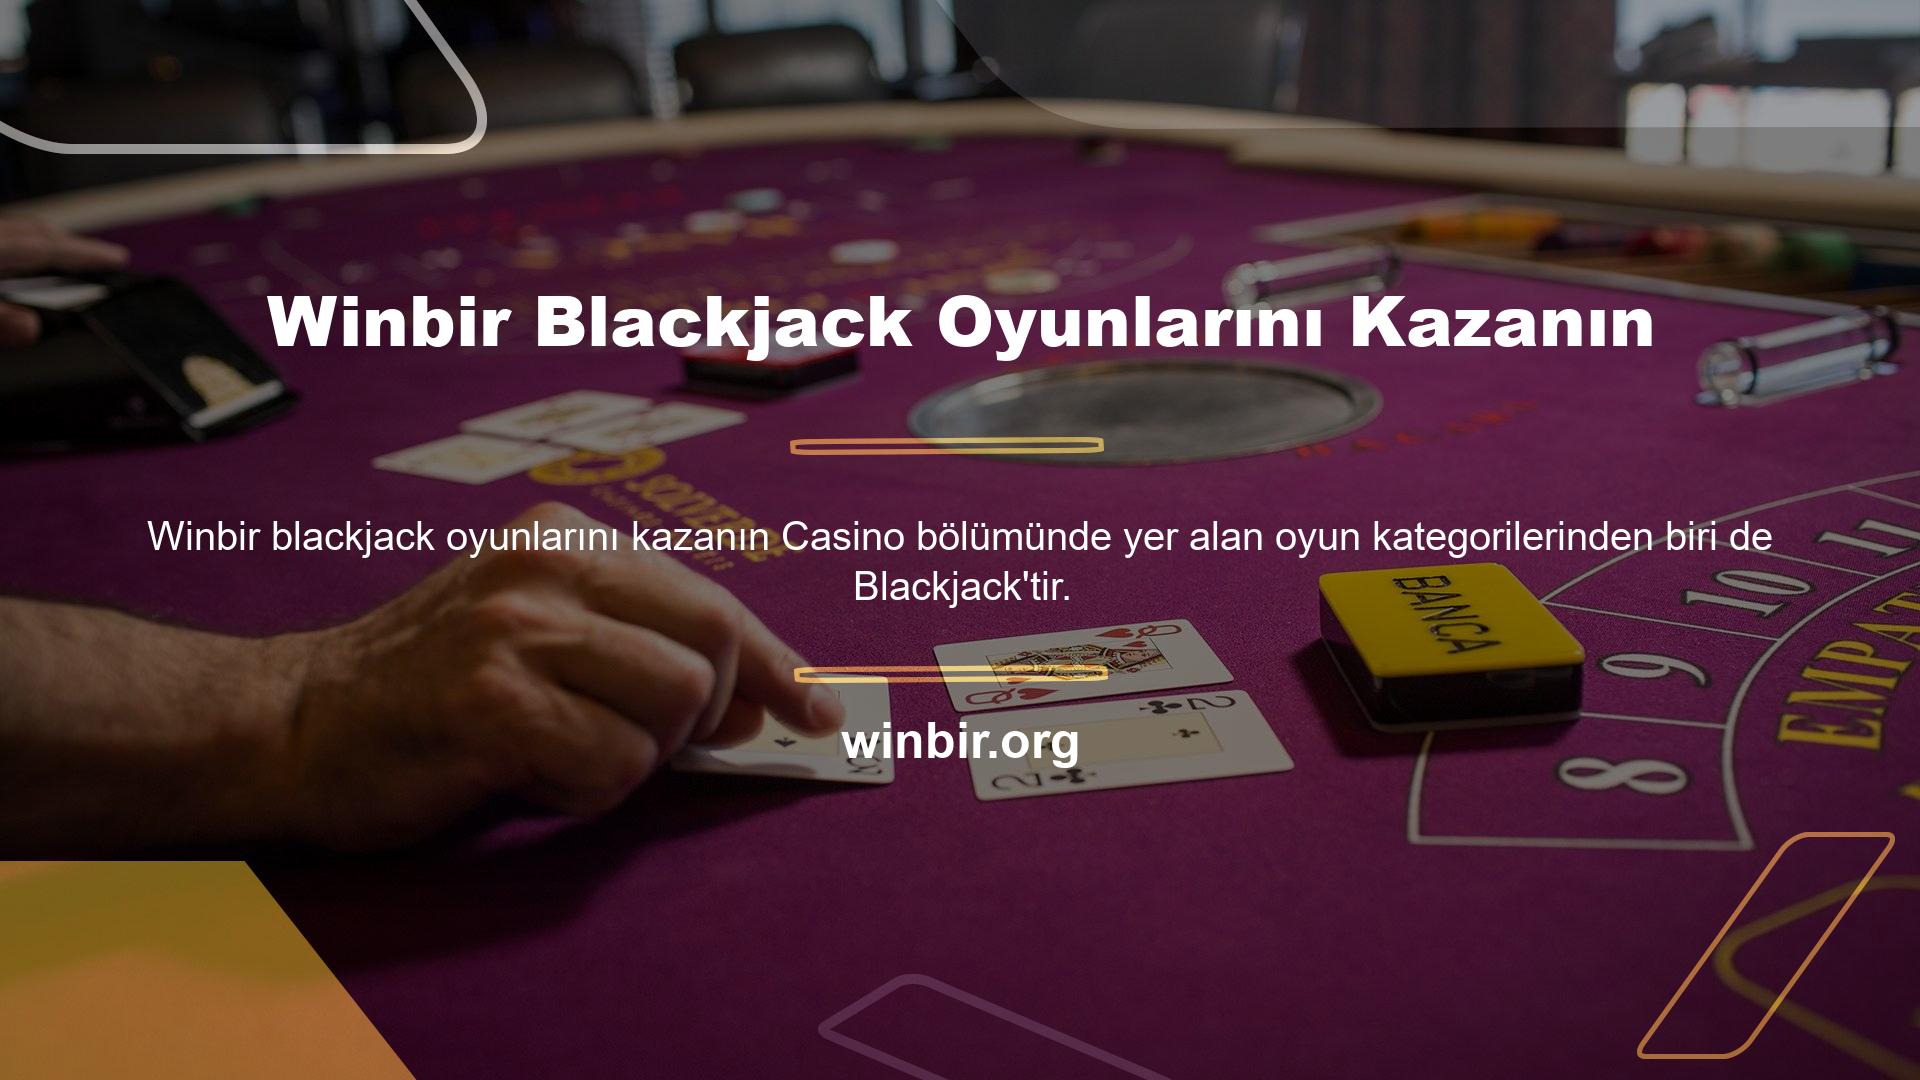 Aynı kumarhane bölümünde olduğu gibi, Winbir blackjack'i kazanmayla ilgili sorular görüyoruz